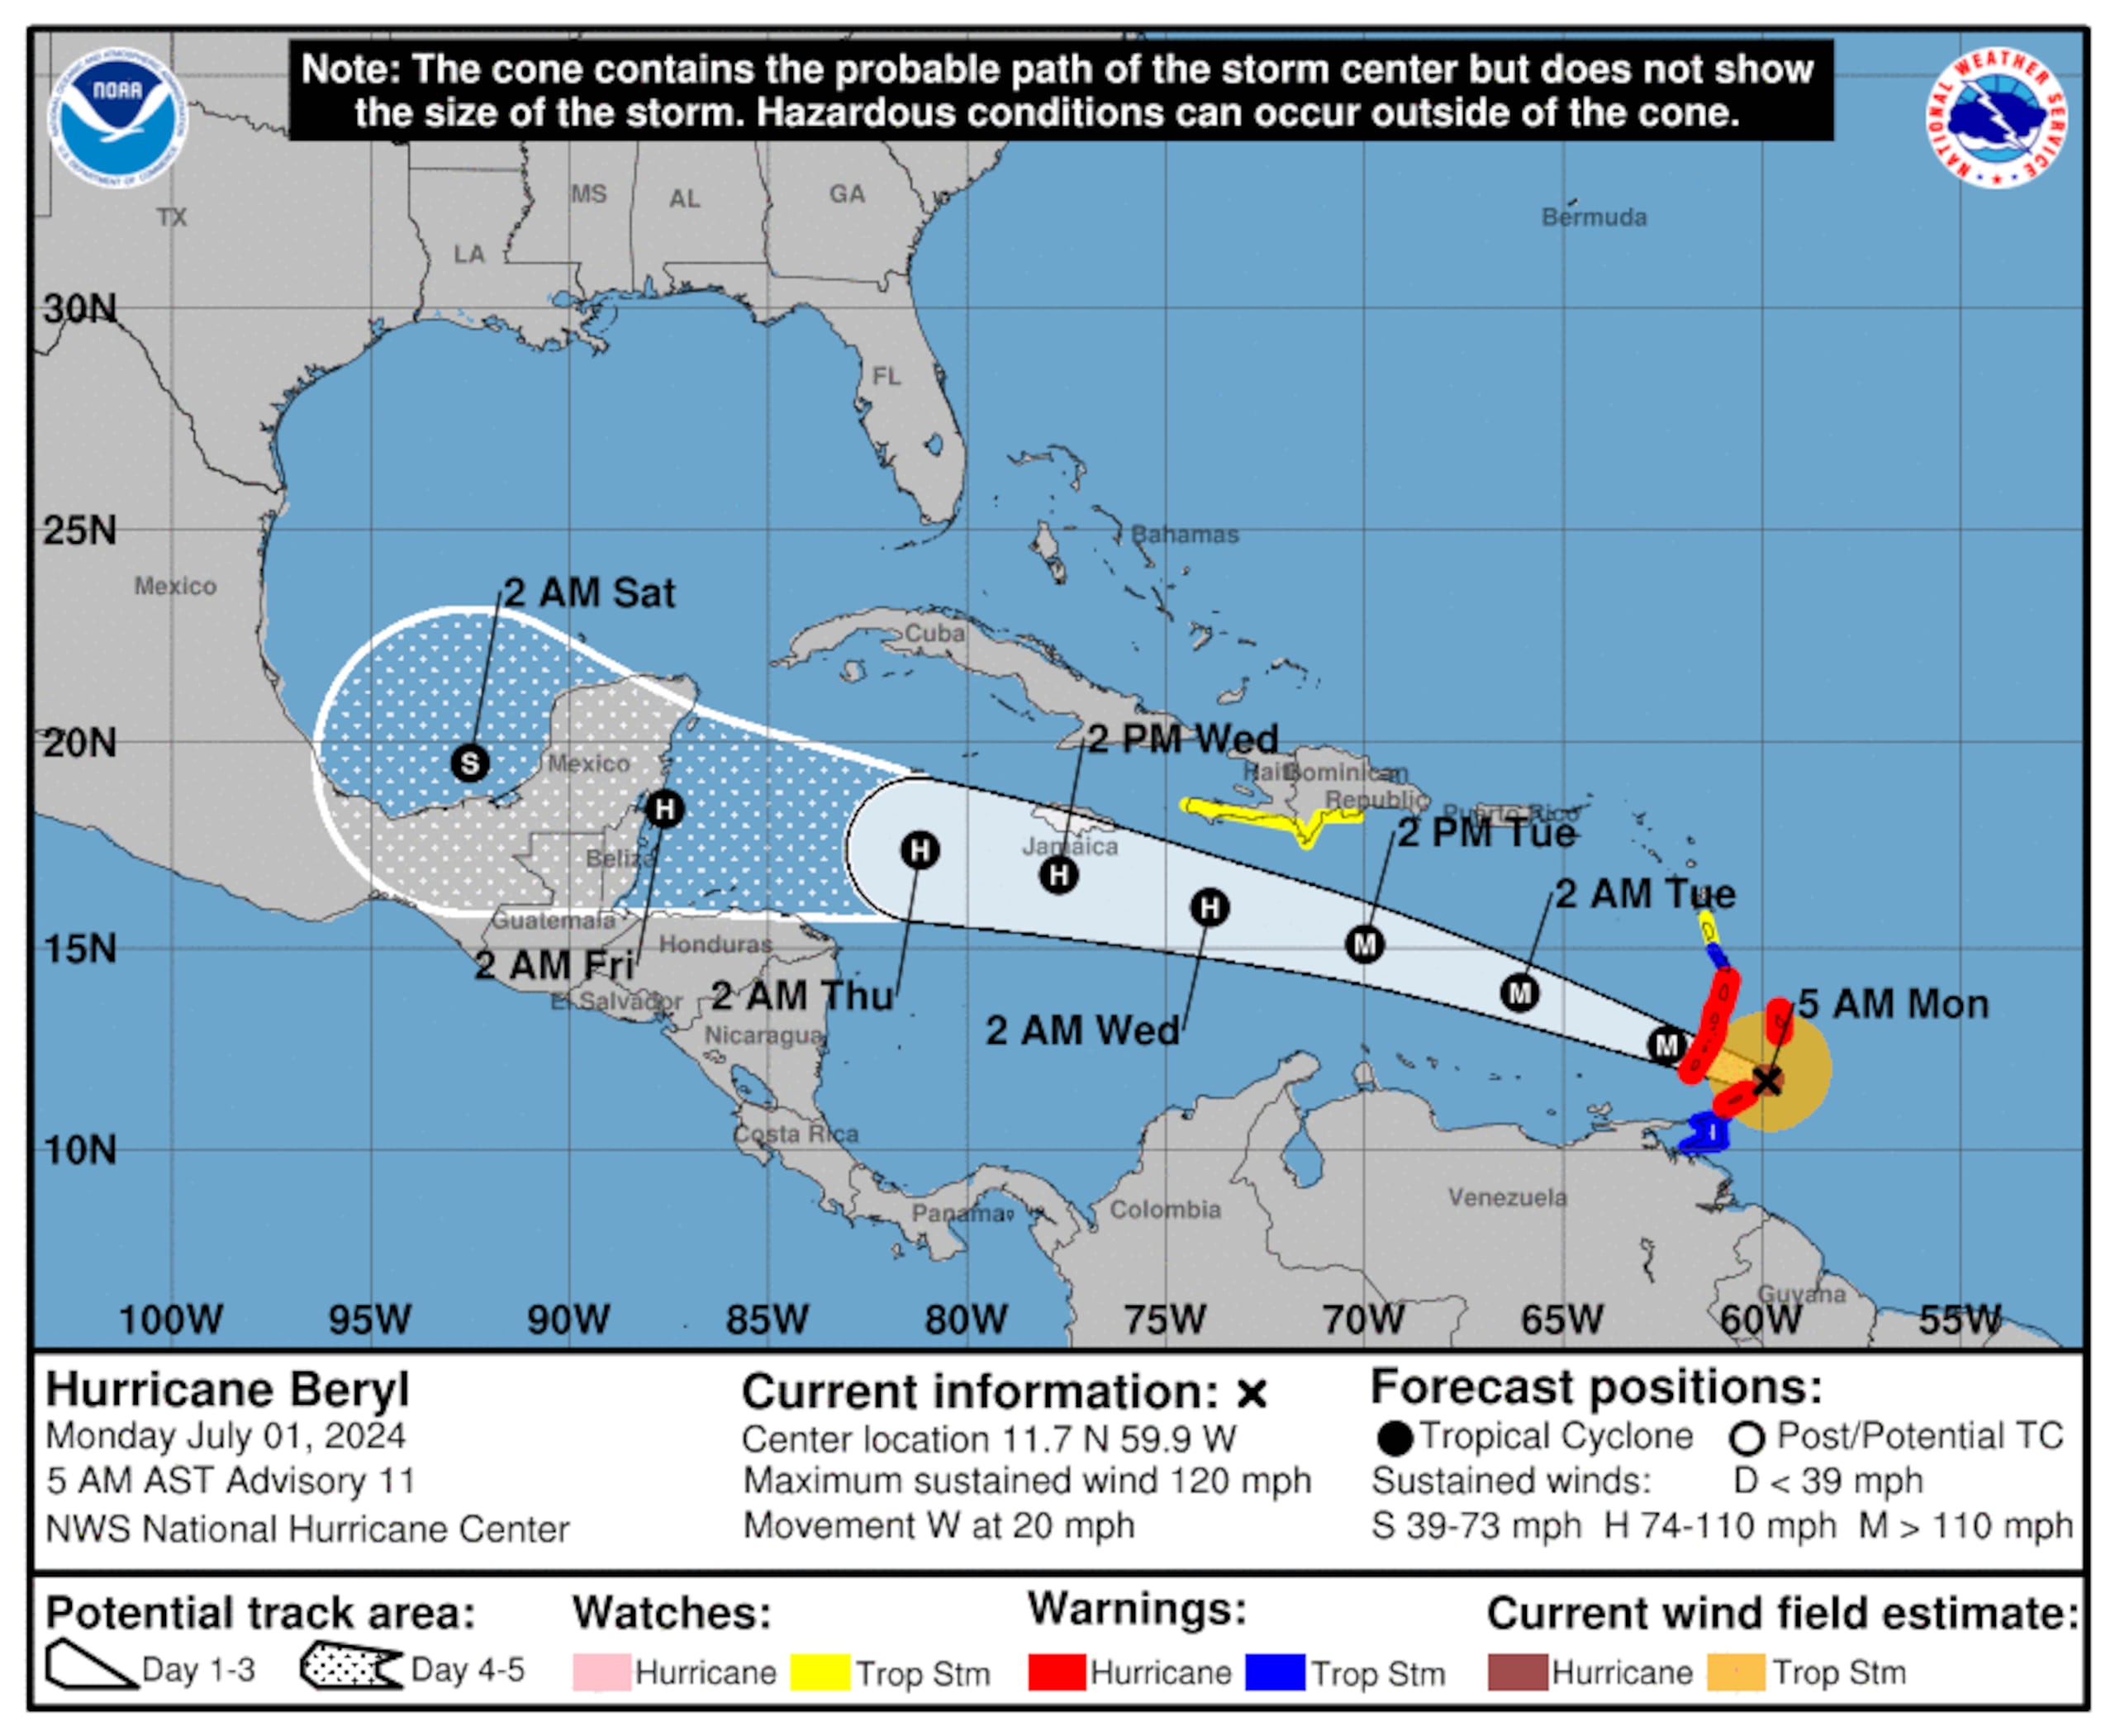 Pronóstico del huracán Beryl emitido hoy a las 5:00 de la mañana.